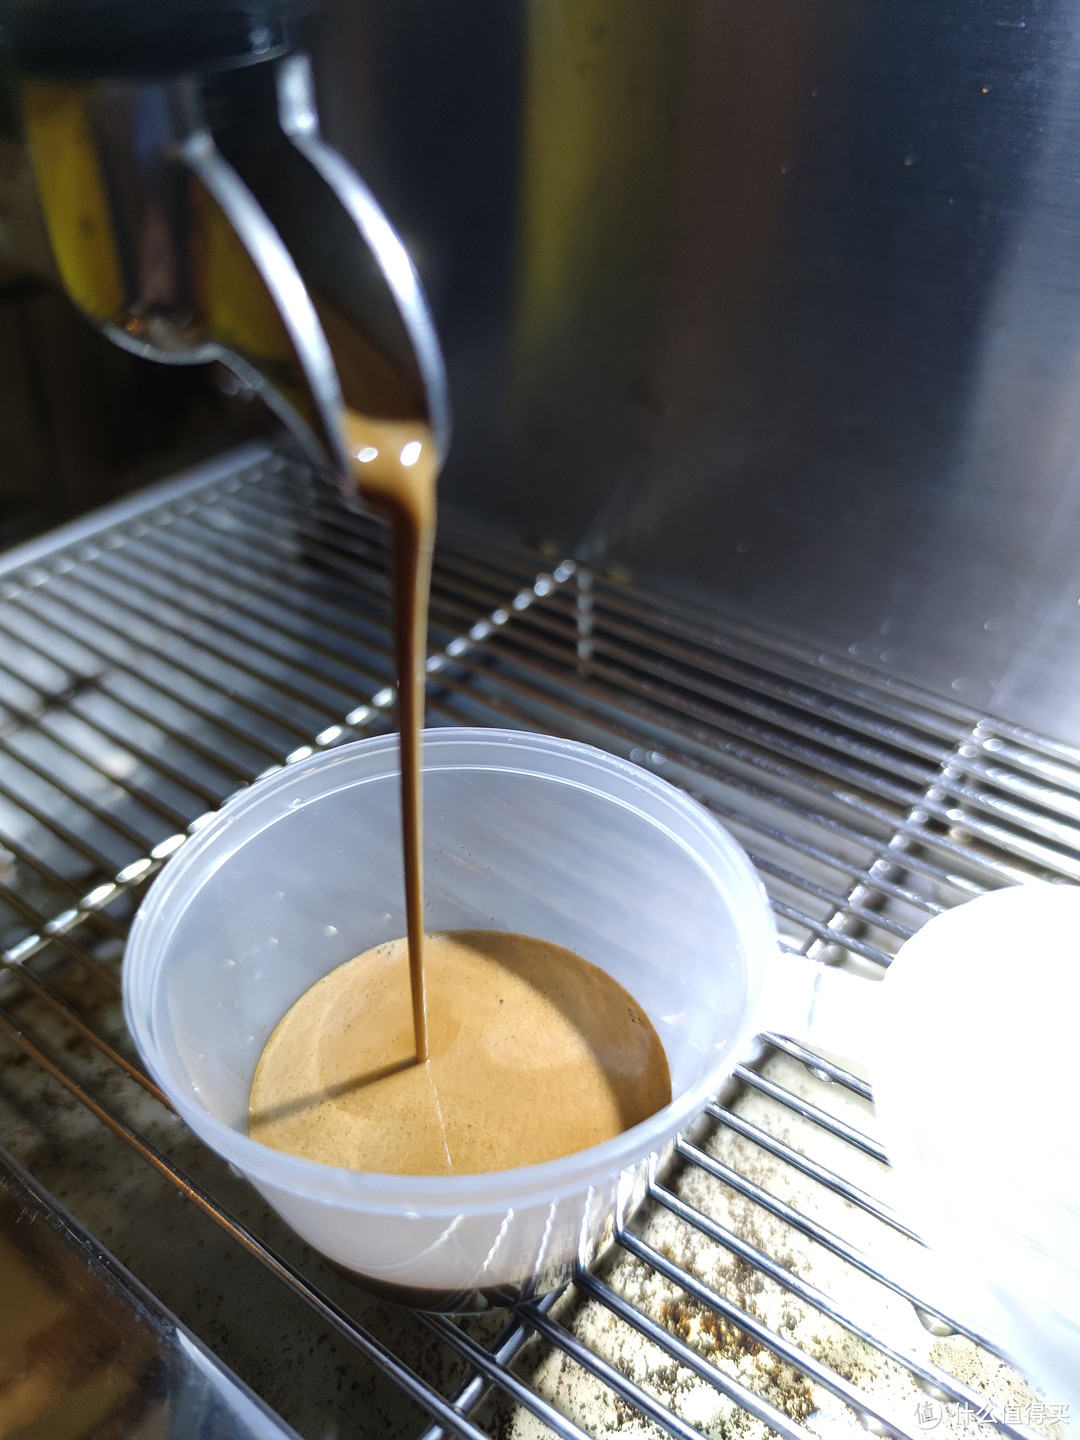 分享下我是如何保鲜咖啡豆跟如何带咖啡去公司